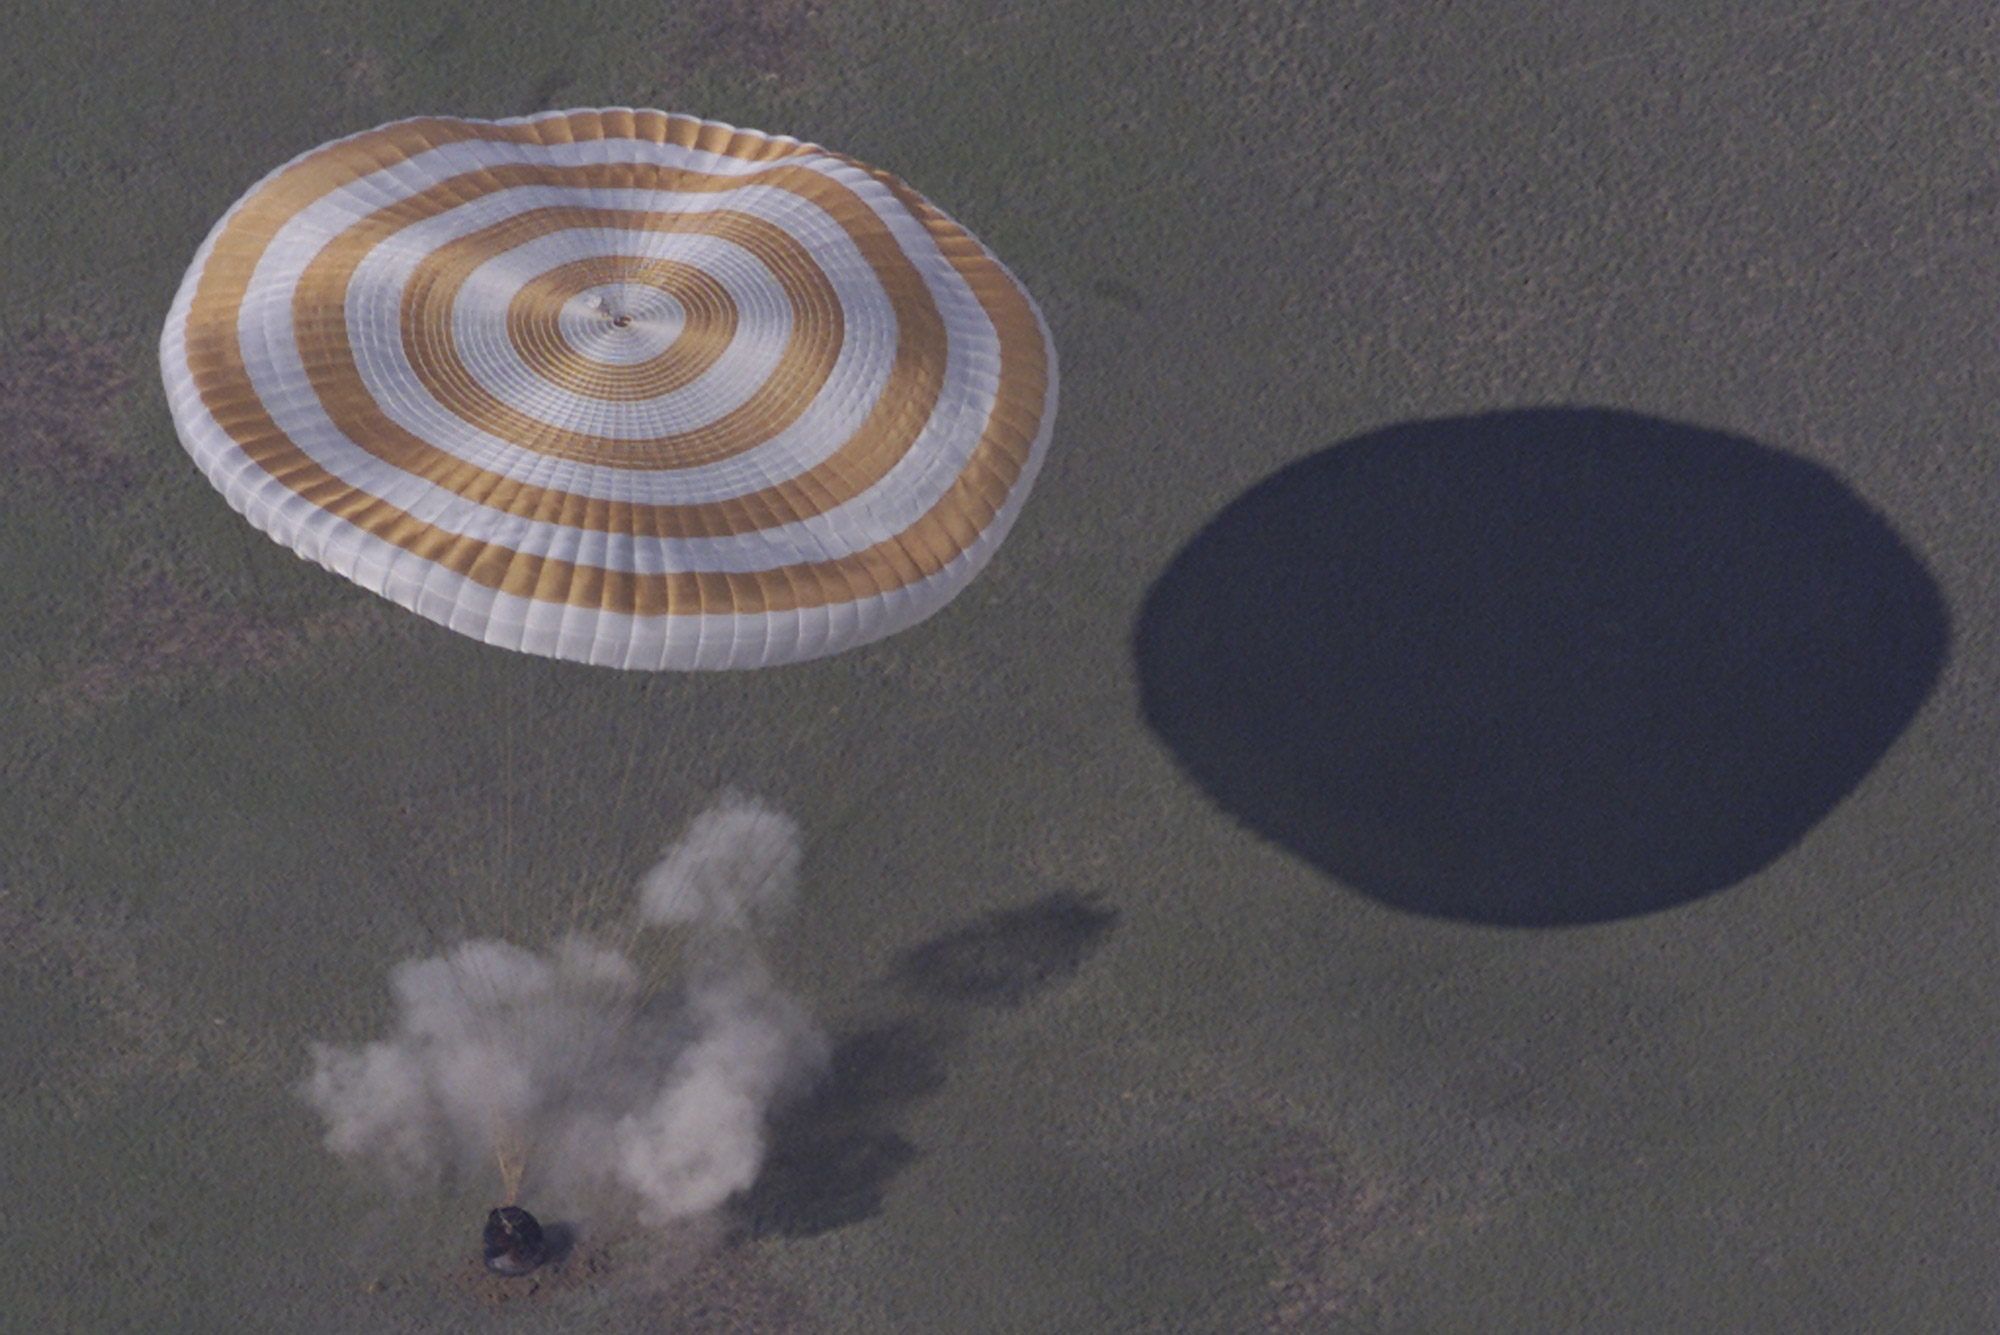 Parachute ouvert, atterrissage d'une capsule Soyuz de retour de la Station spatiale internationale. © ESA, S. Corvaja